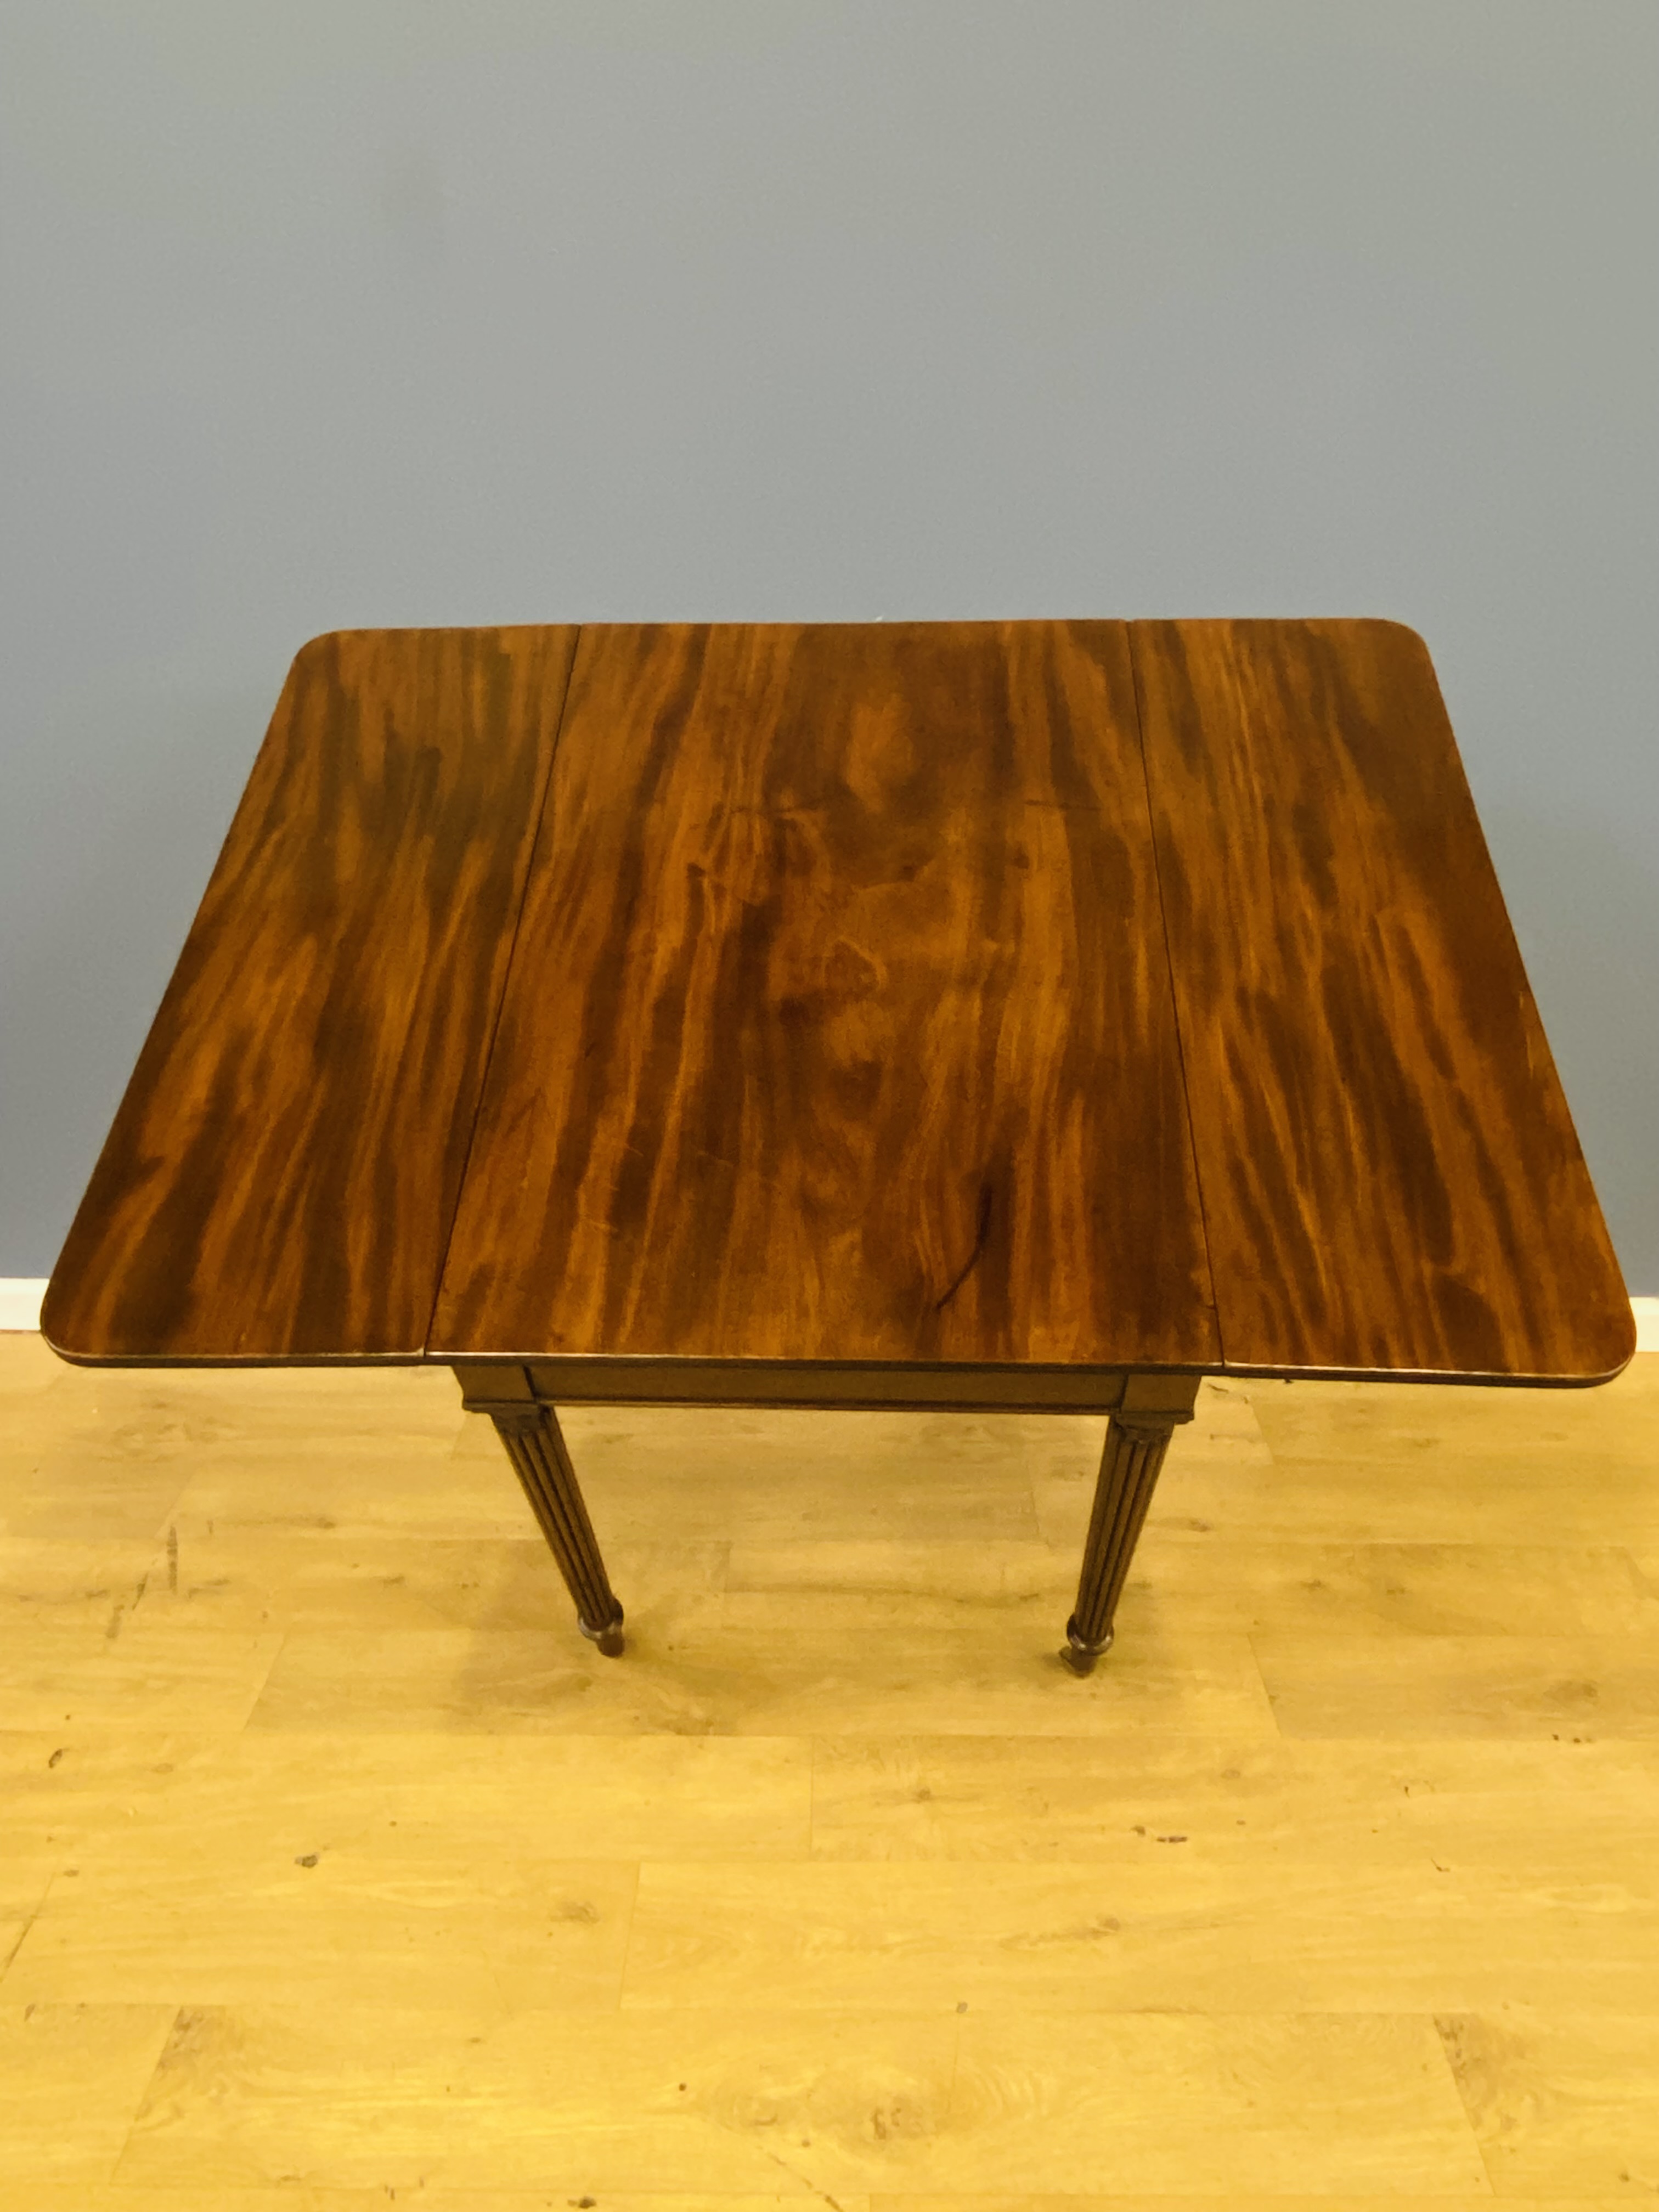 19th century mahogany pembroke table - Image 5 of 7